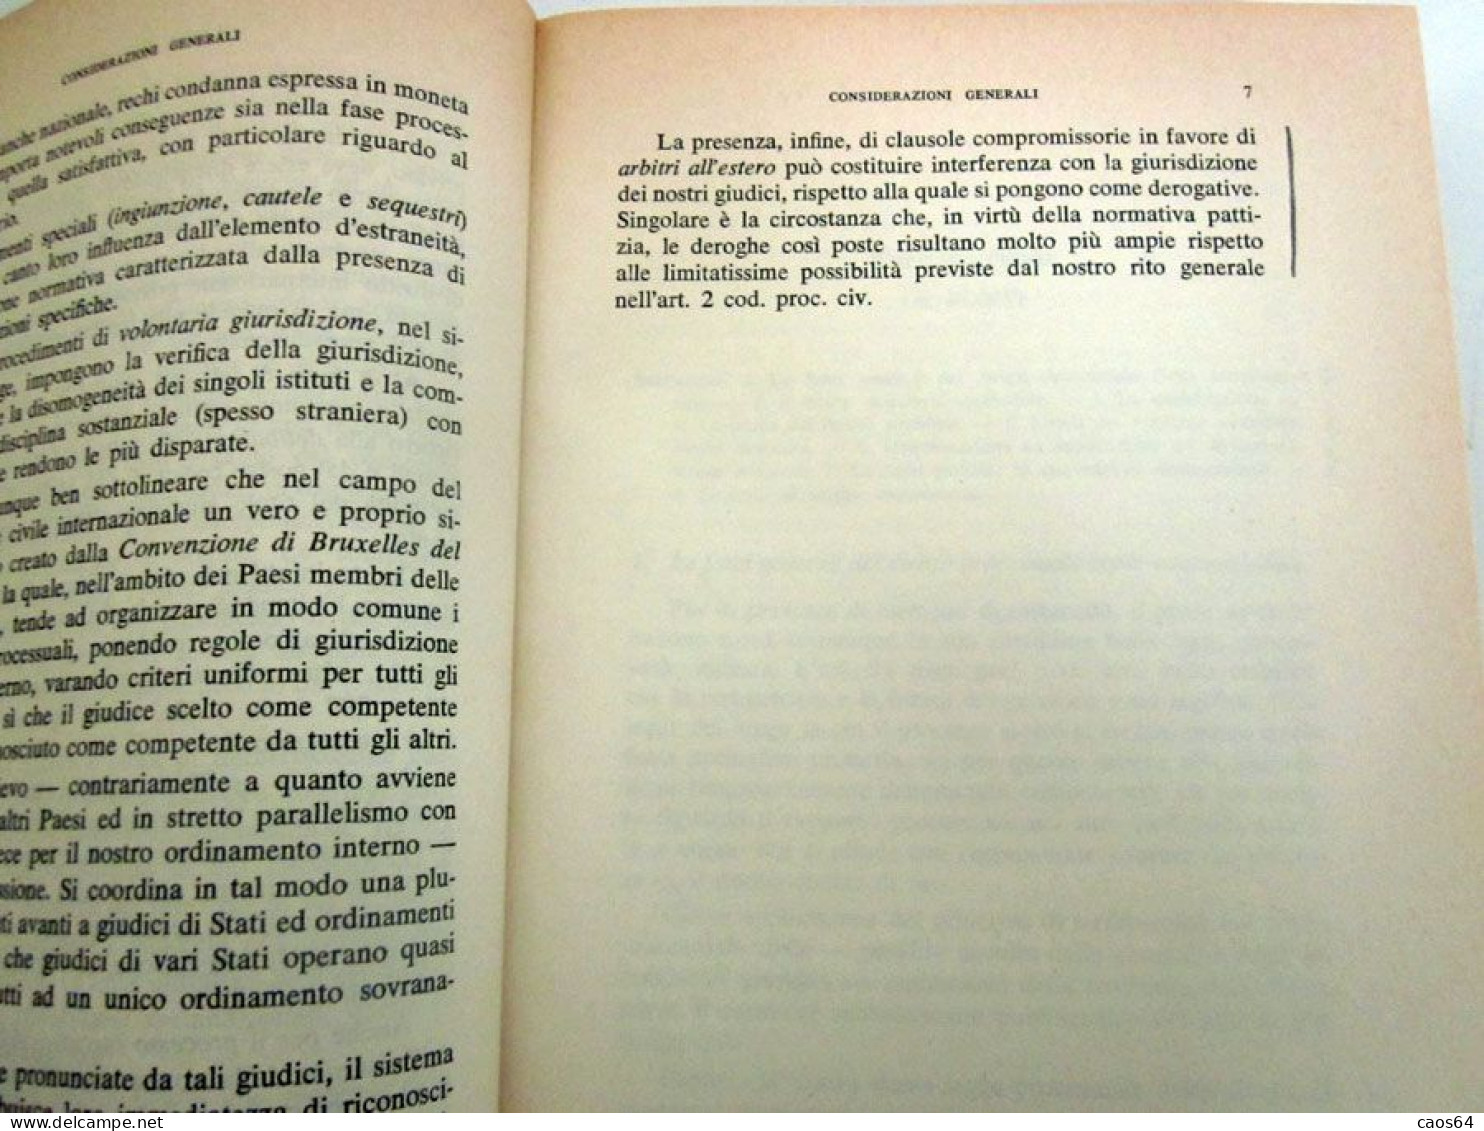 Il processo civile italiano e lo straniero G. Campeis A. De Pauli Giuffrè 1986